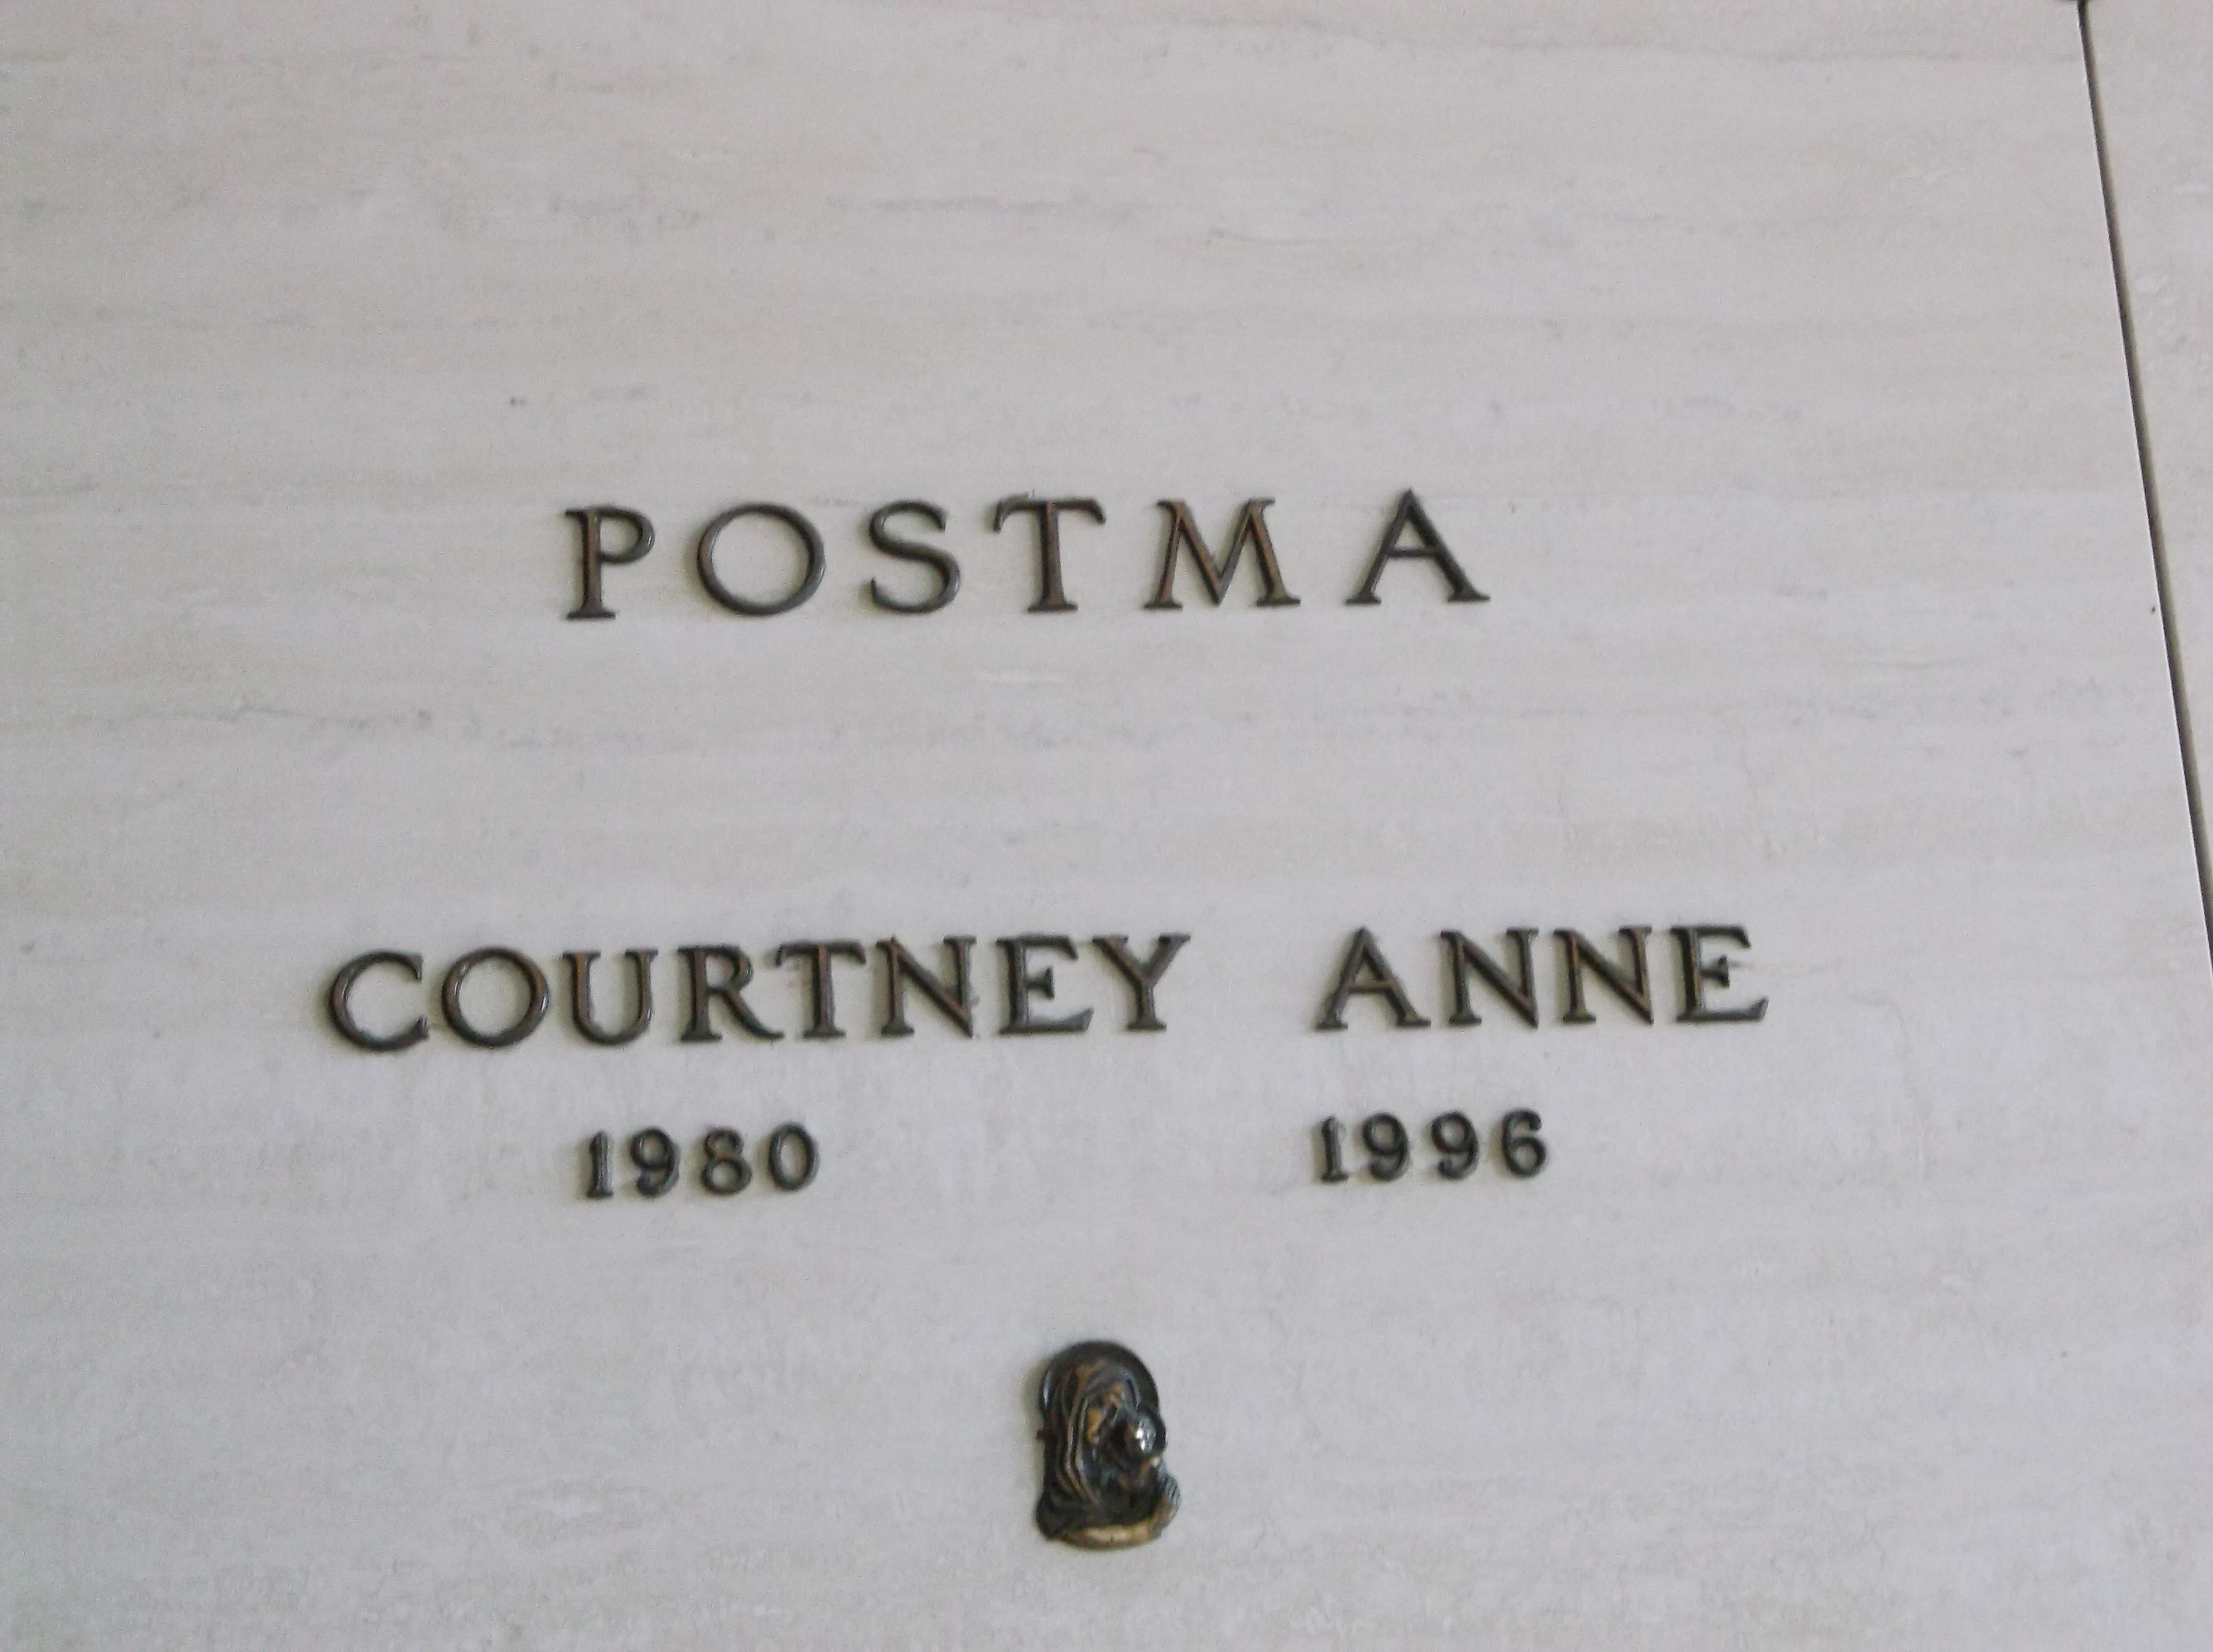 Courtney Anne Postma